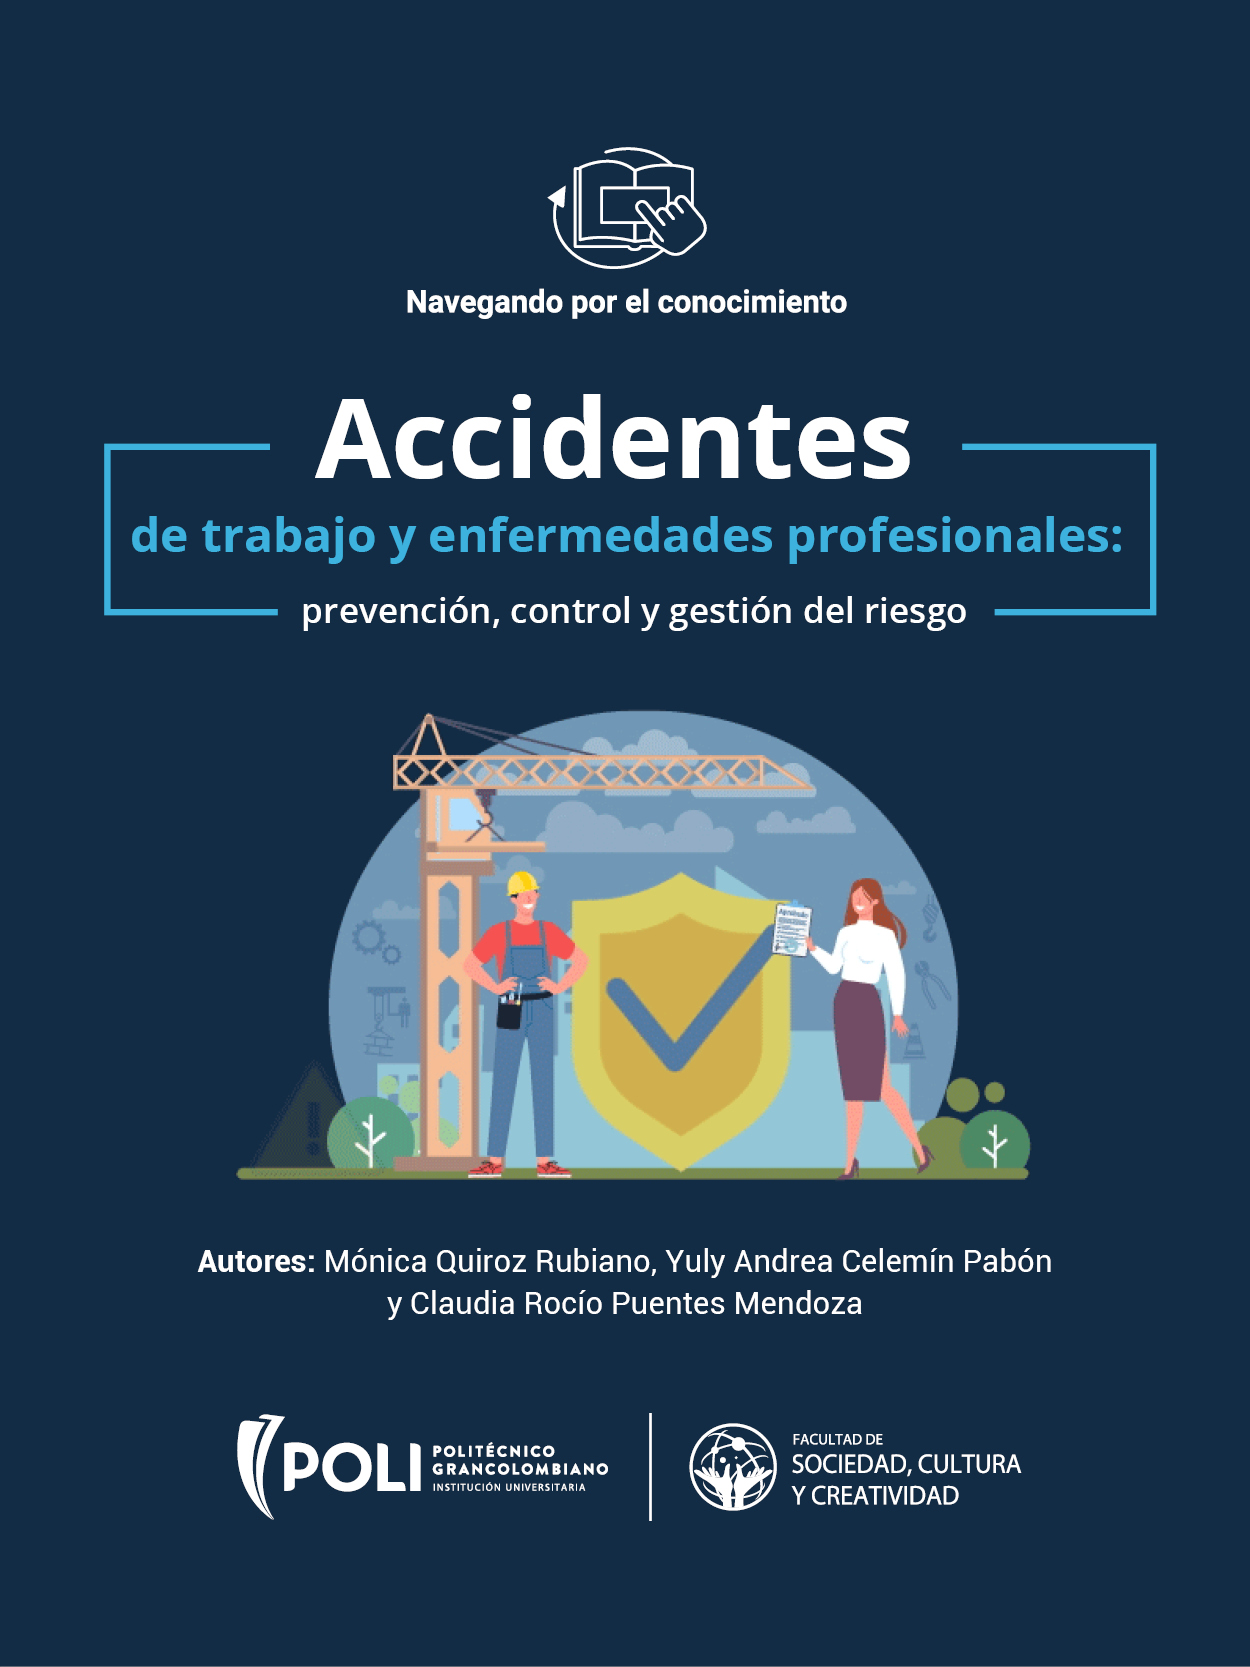 Accidentes de trabajo y enfermedades profesionales: prevención, control  y  gestión del riesgo